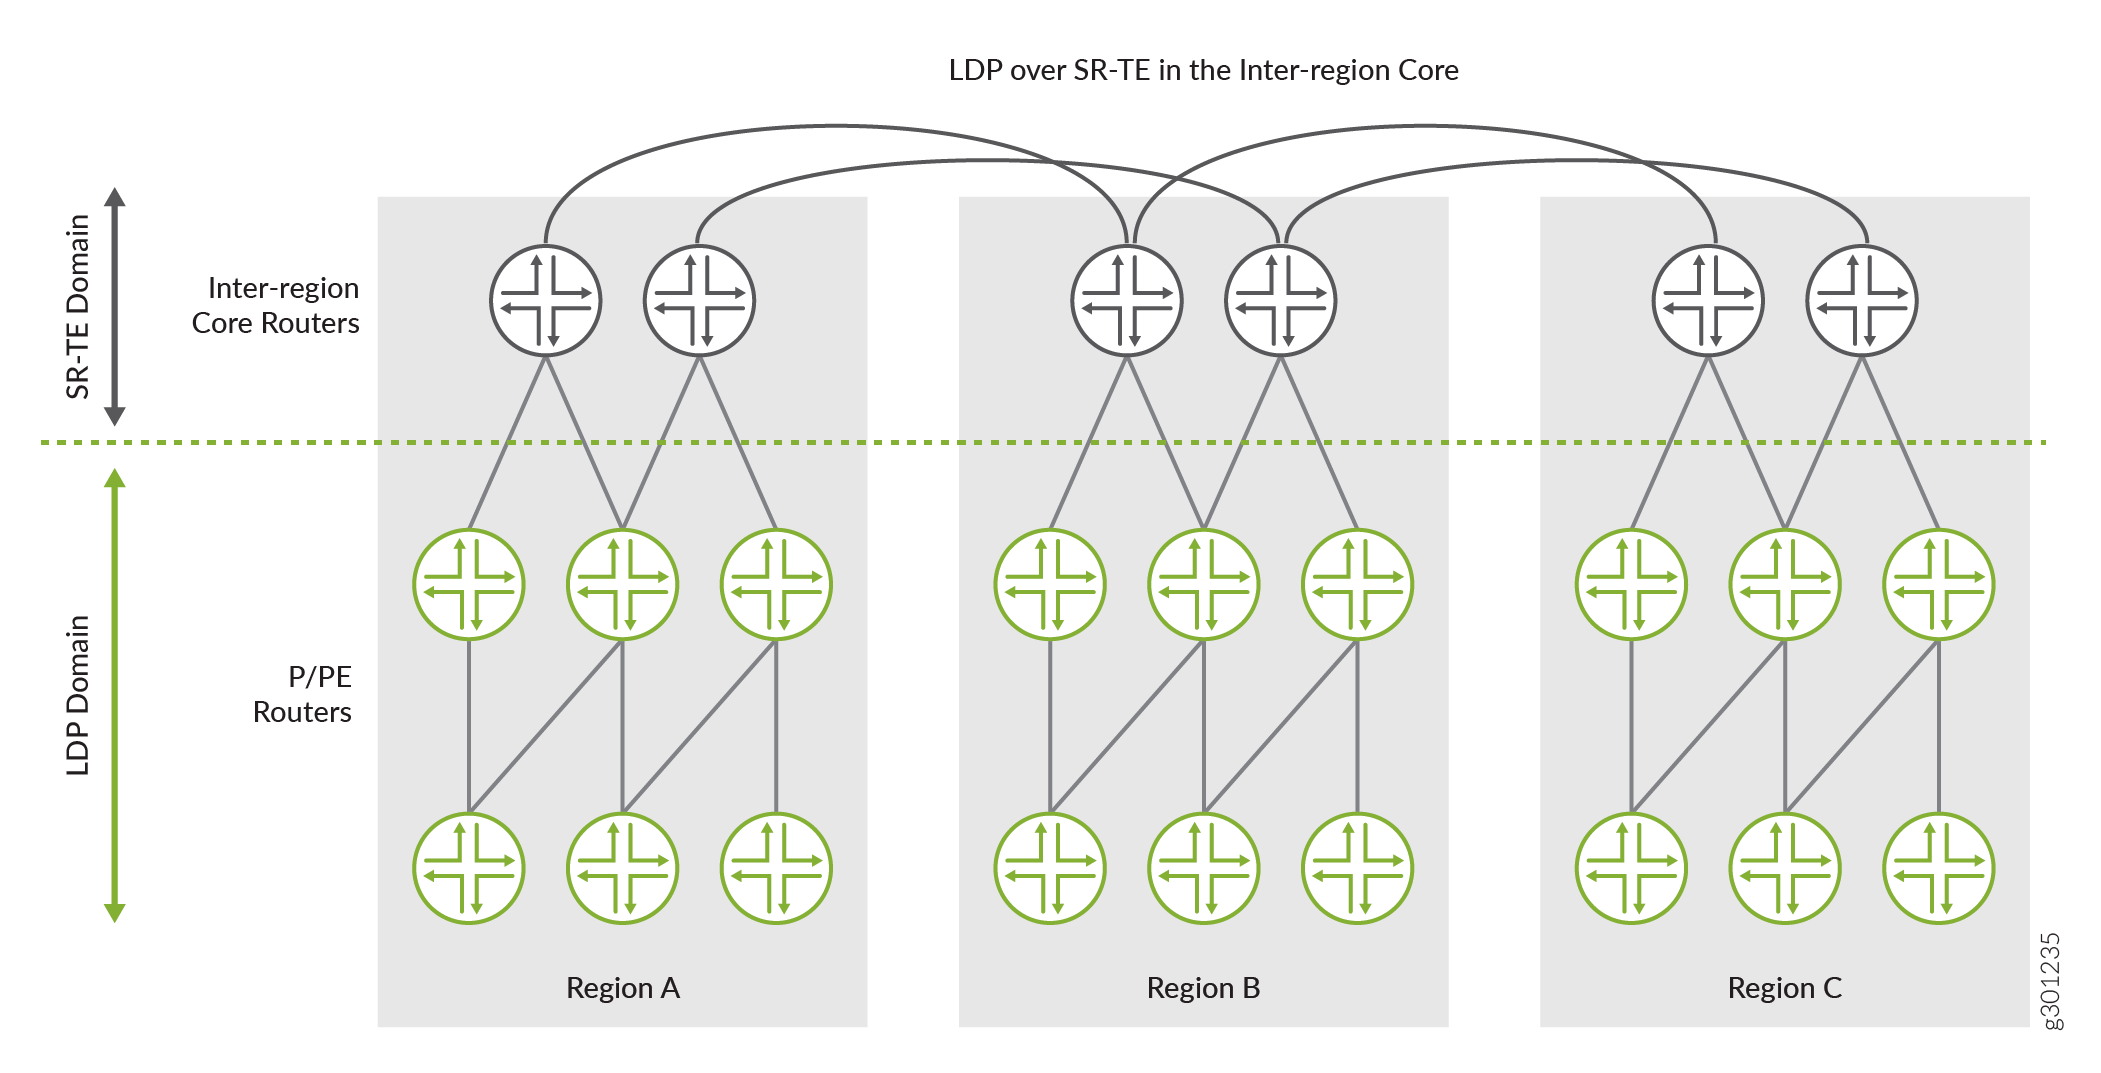 LDP sobre SR-TE entre redes centrais inter-região